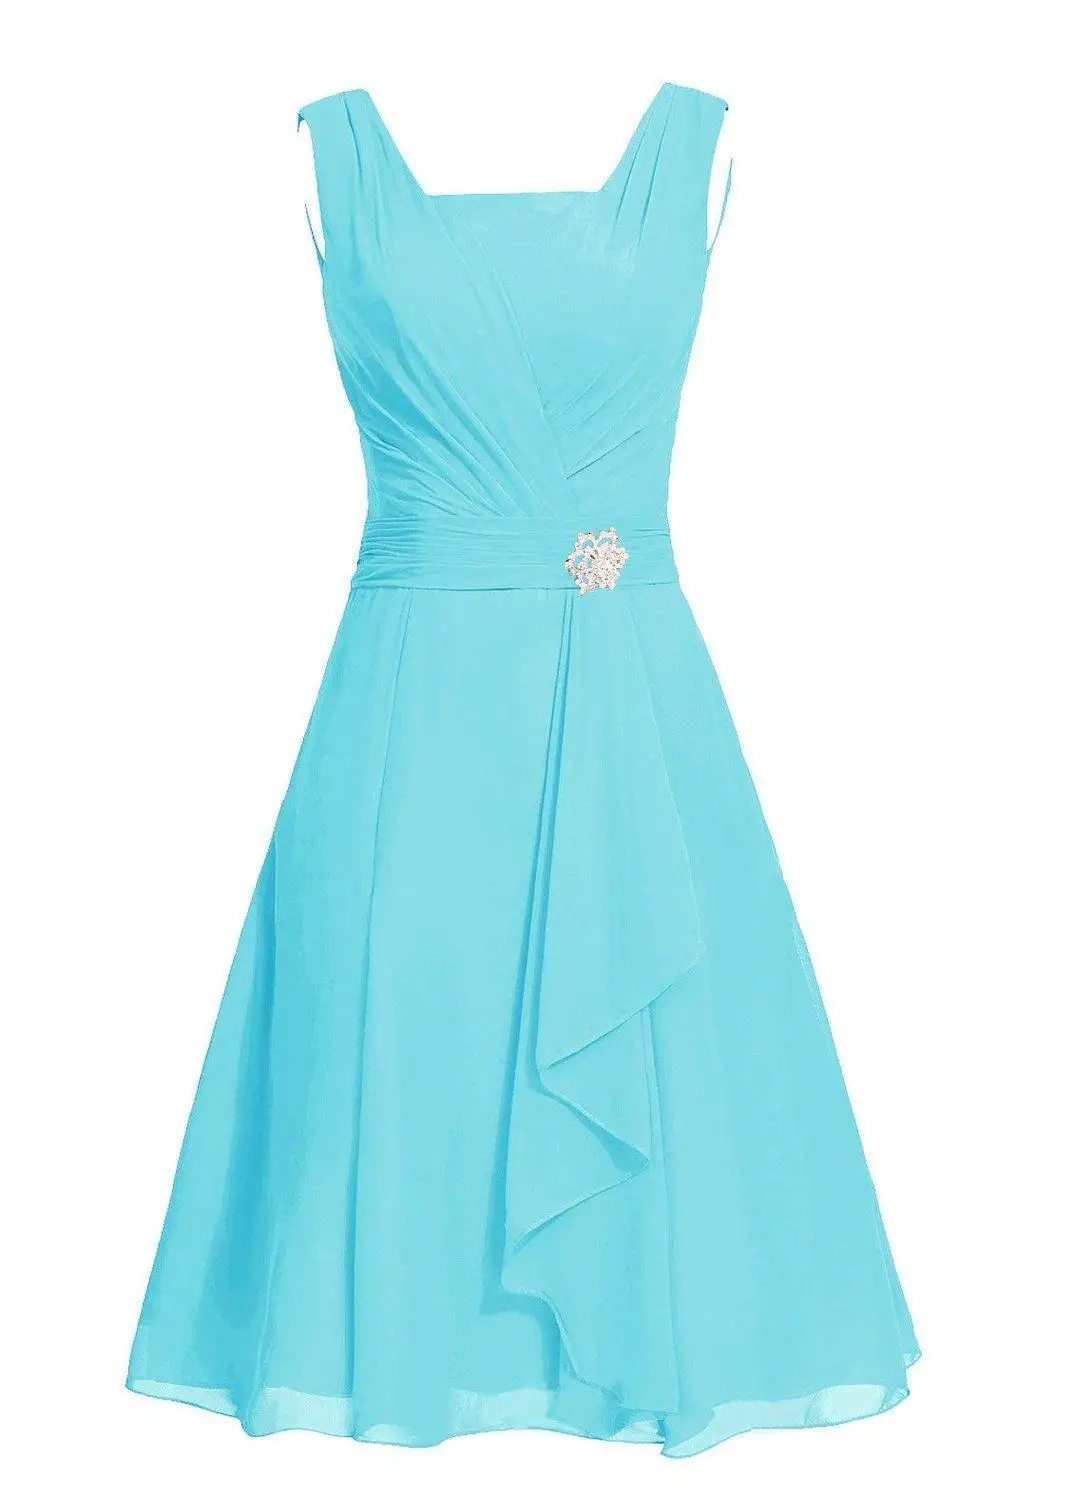 Waulizane элегантные шифоновые платья трапециевидной формы для выпускного вечера на молнии без рукавов вечерние платья 16 цветов на таможне обычный рукав - Цвет: Sky Blue